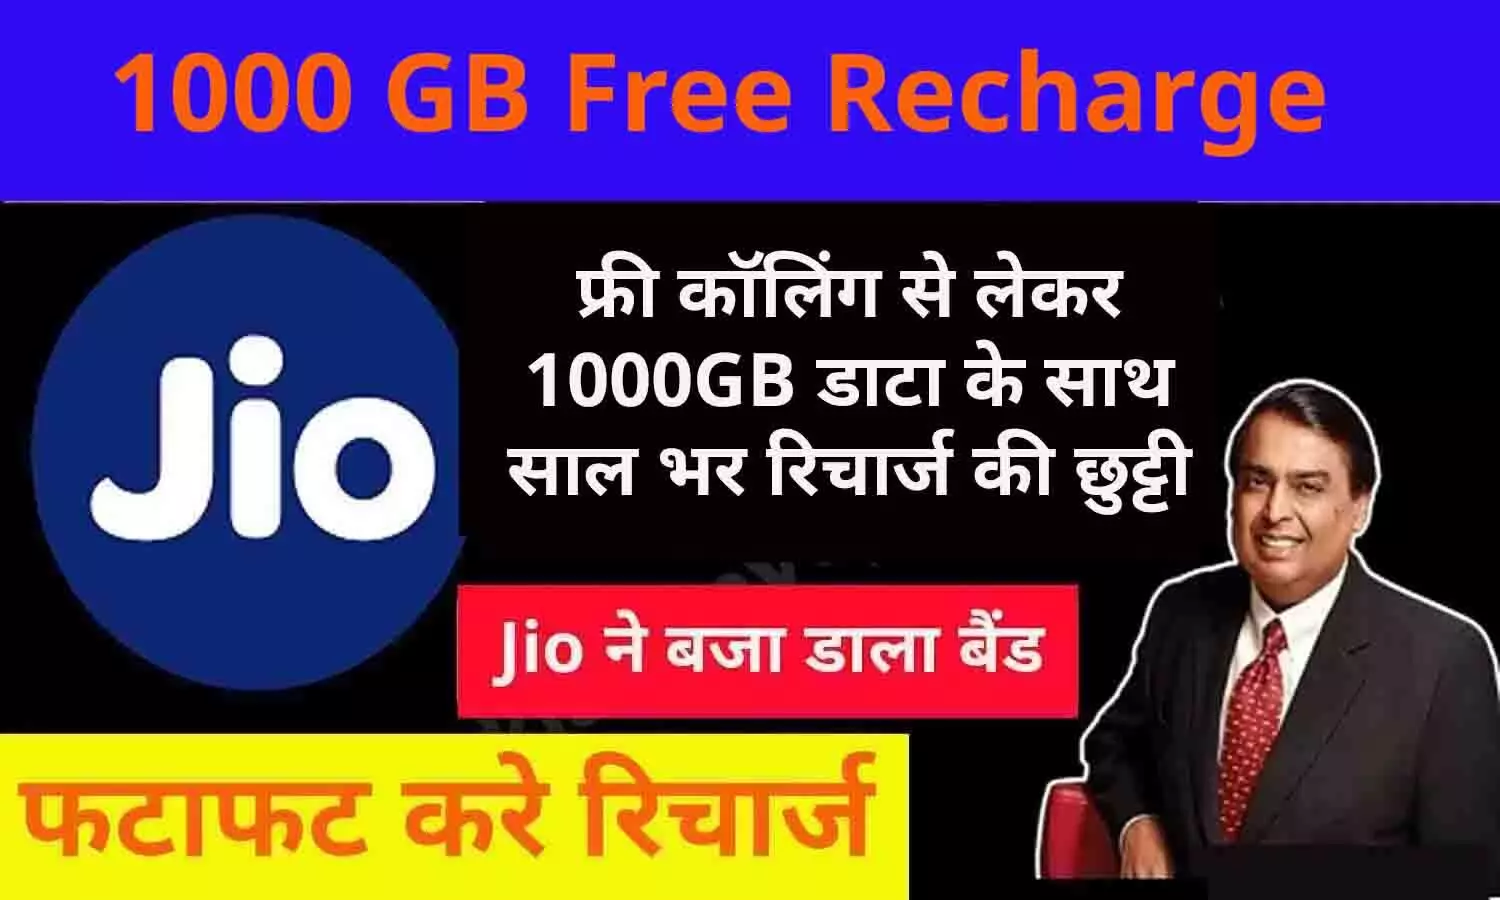 1000 GB Free Recharge: बड़ा ऐलान! जियो के देशभर के सभी ग्राहकों को 1000GB डाटा फ्री, रीचार्ज से साल भर की छुट्टी, फटाफट जाने अपडेट